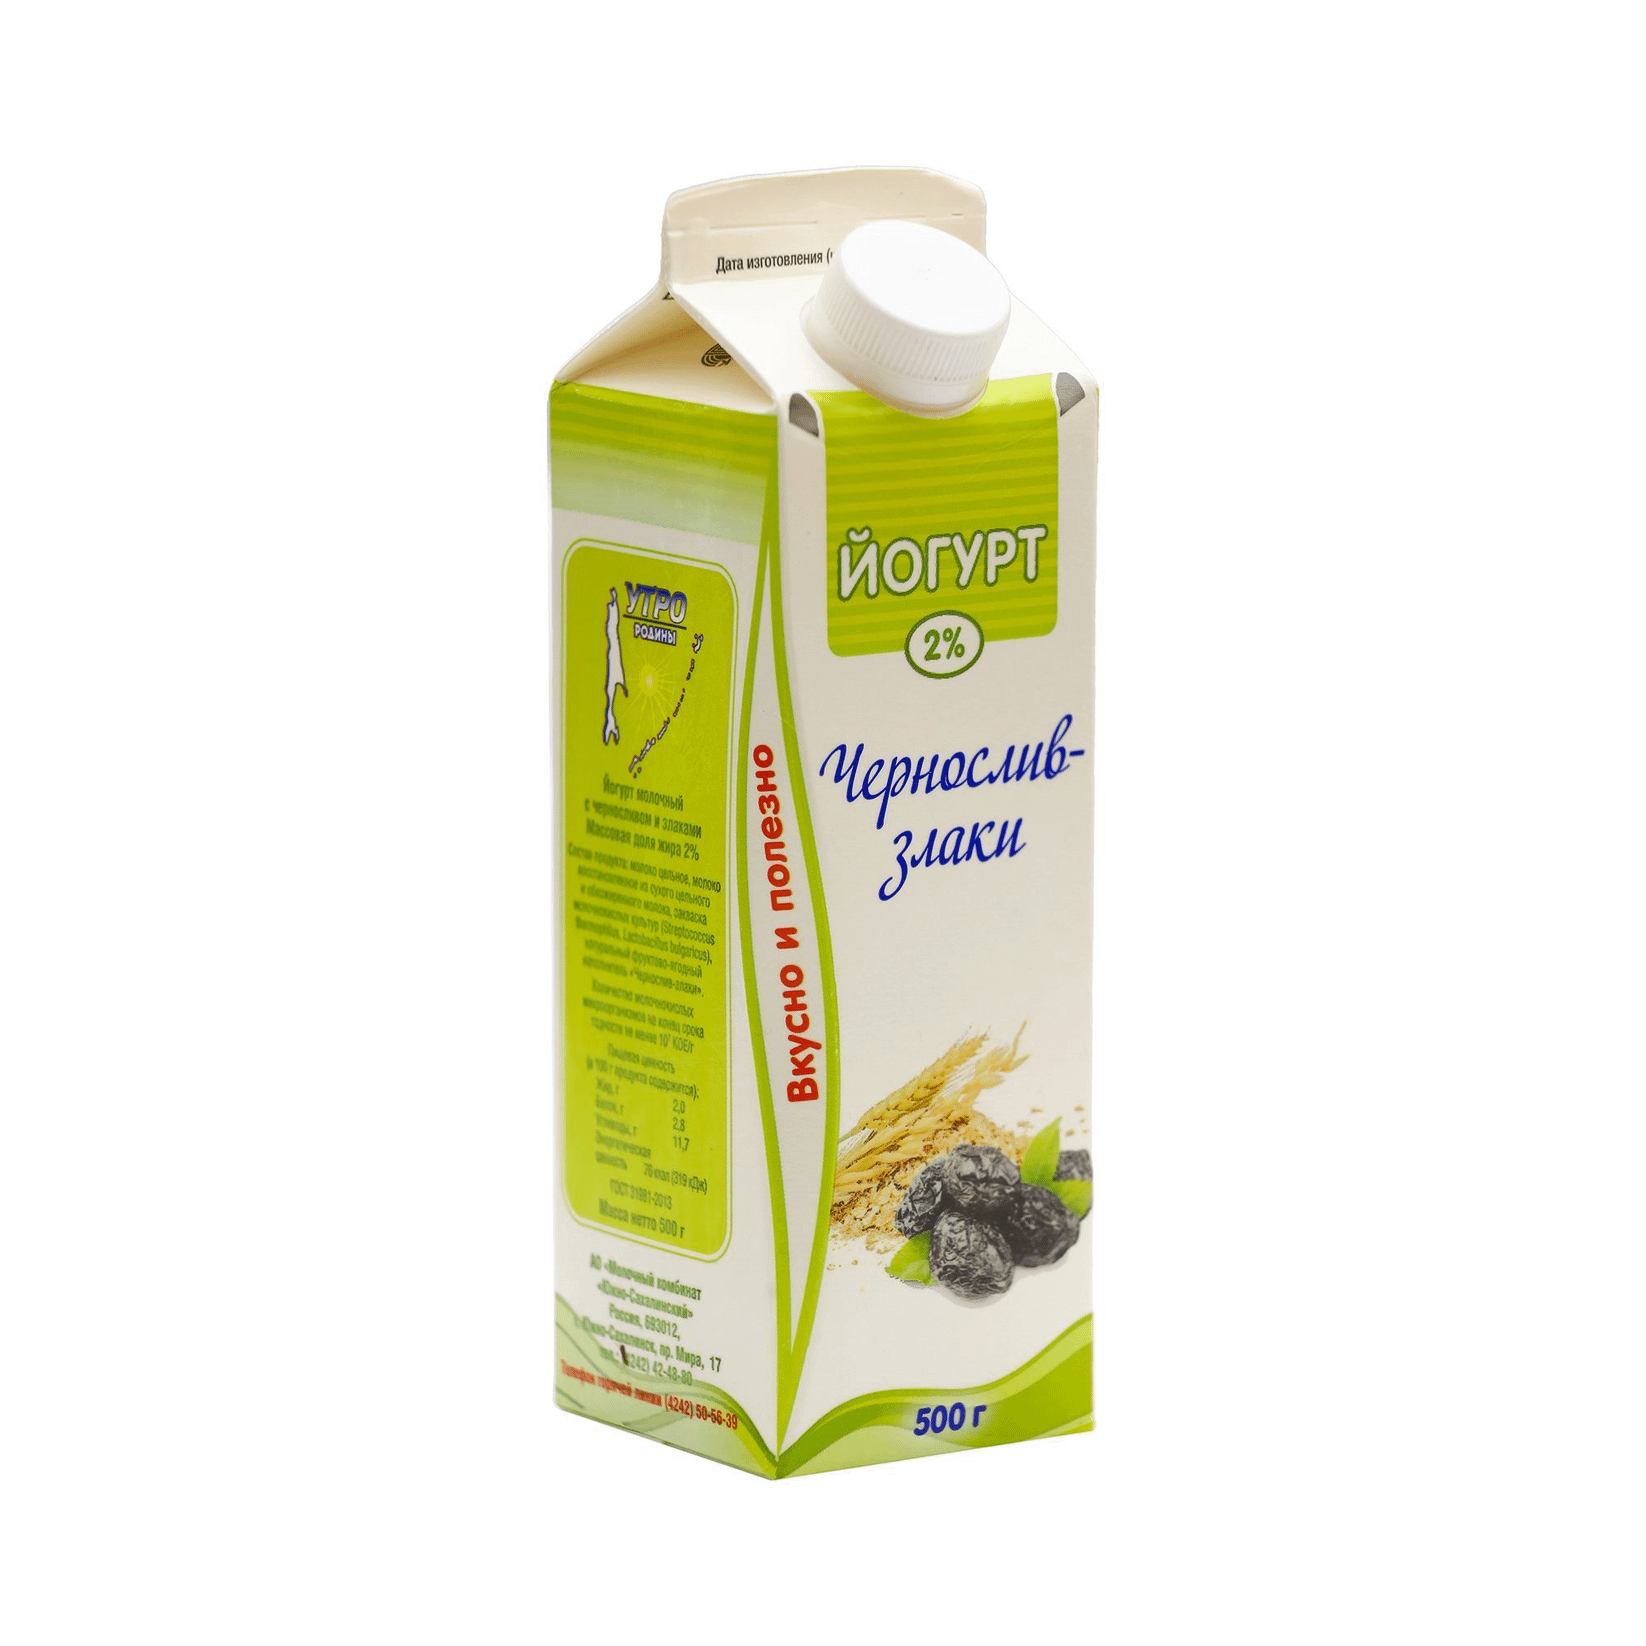 Йогурт питьевой Молочный Мир чернослив-злаки 2% 450 мл